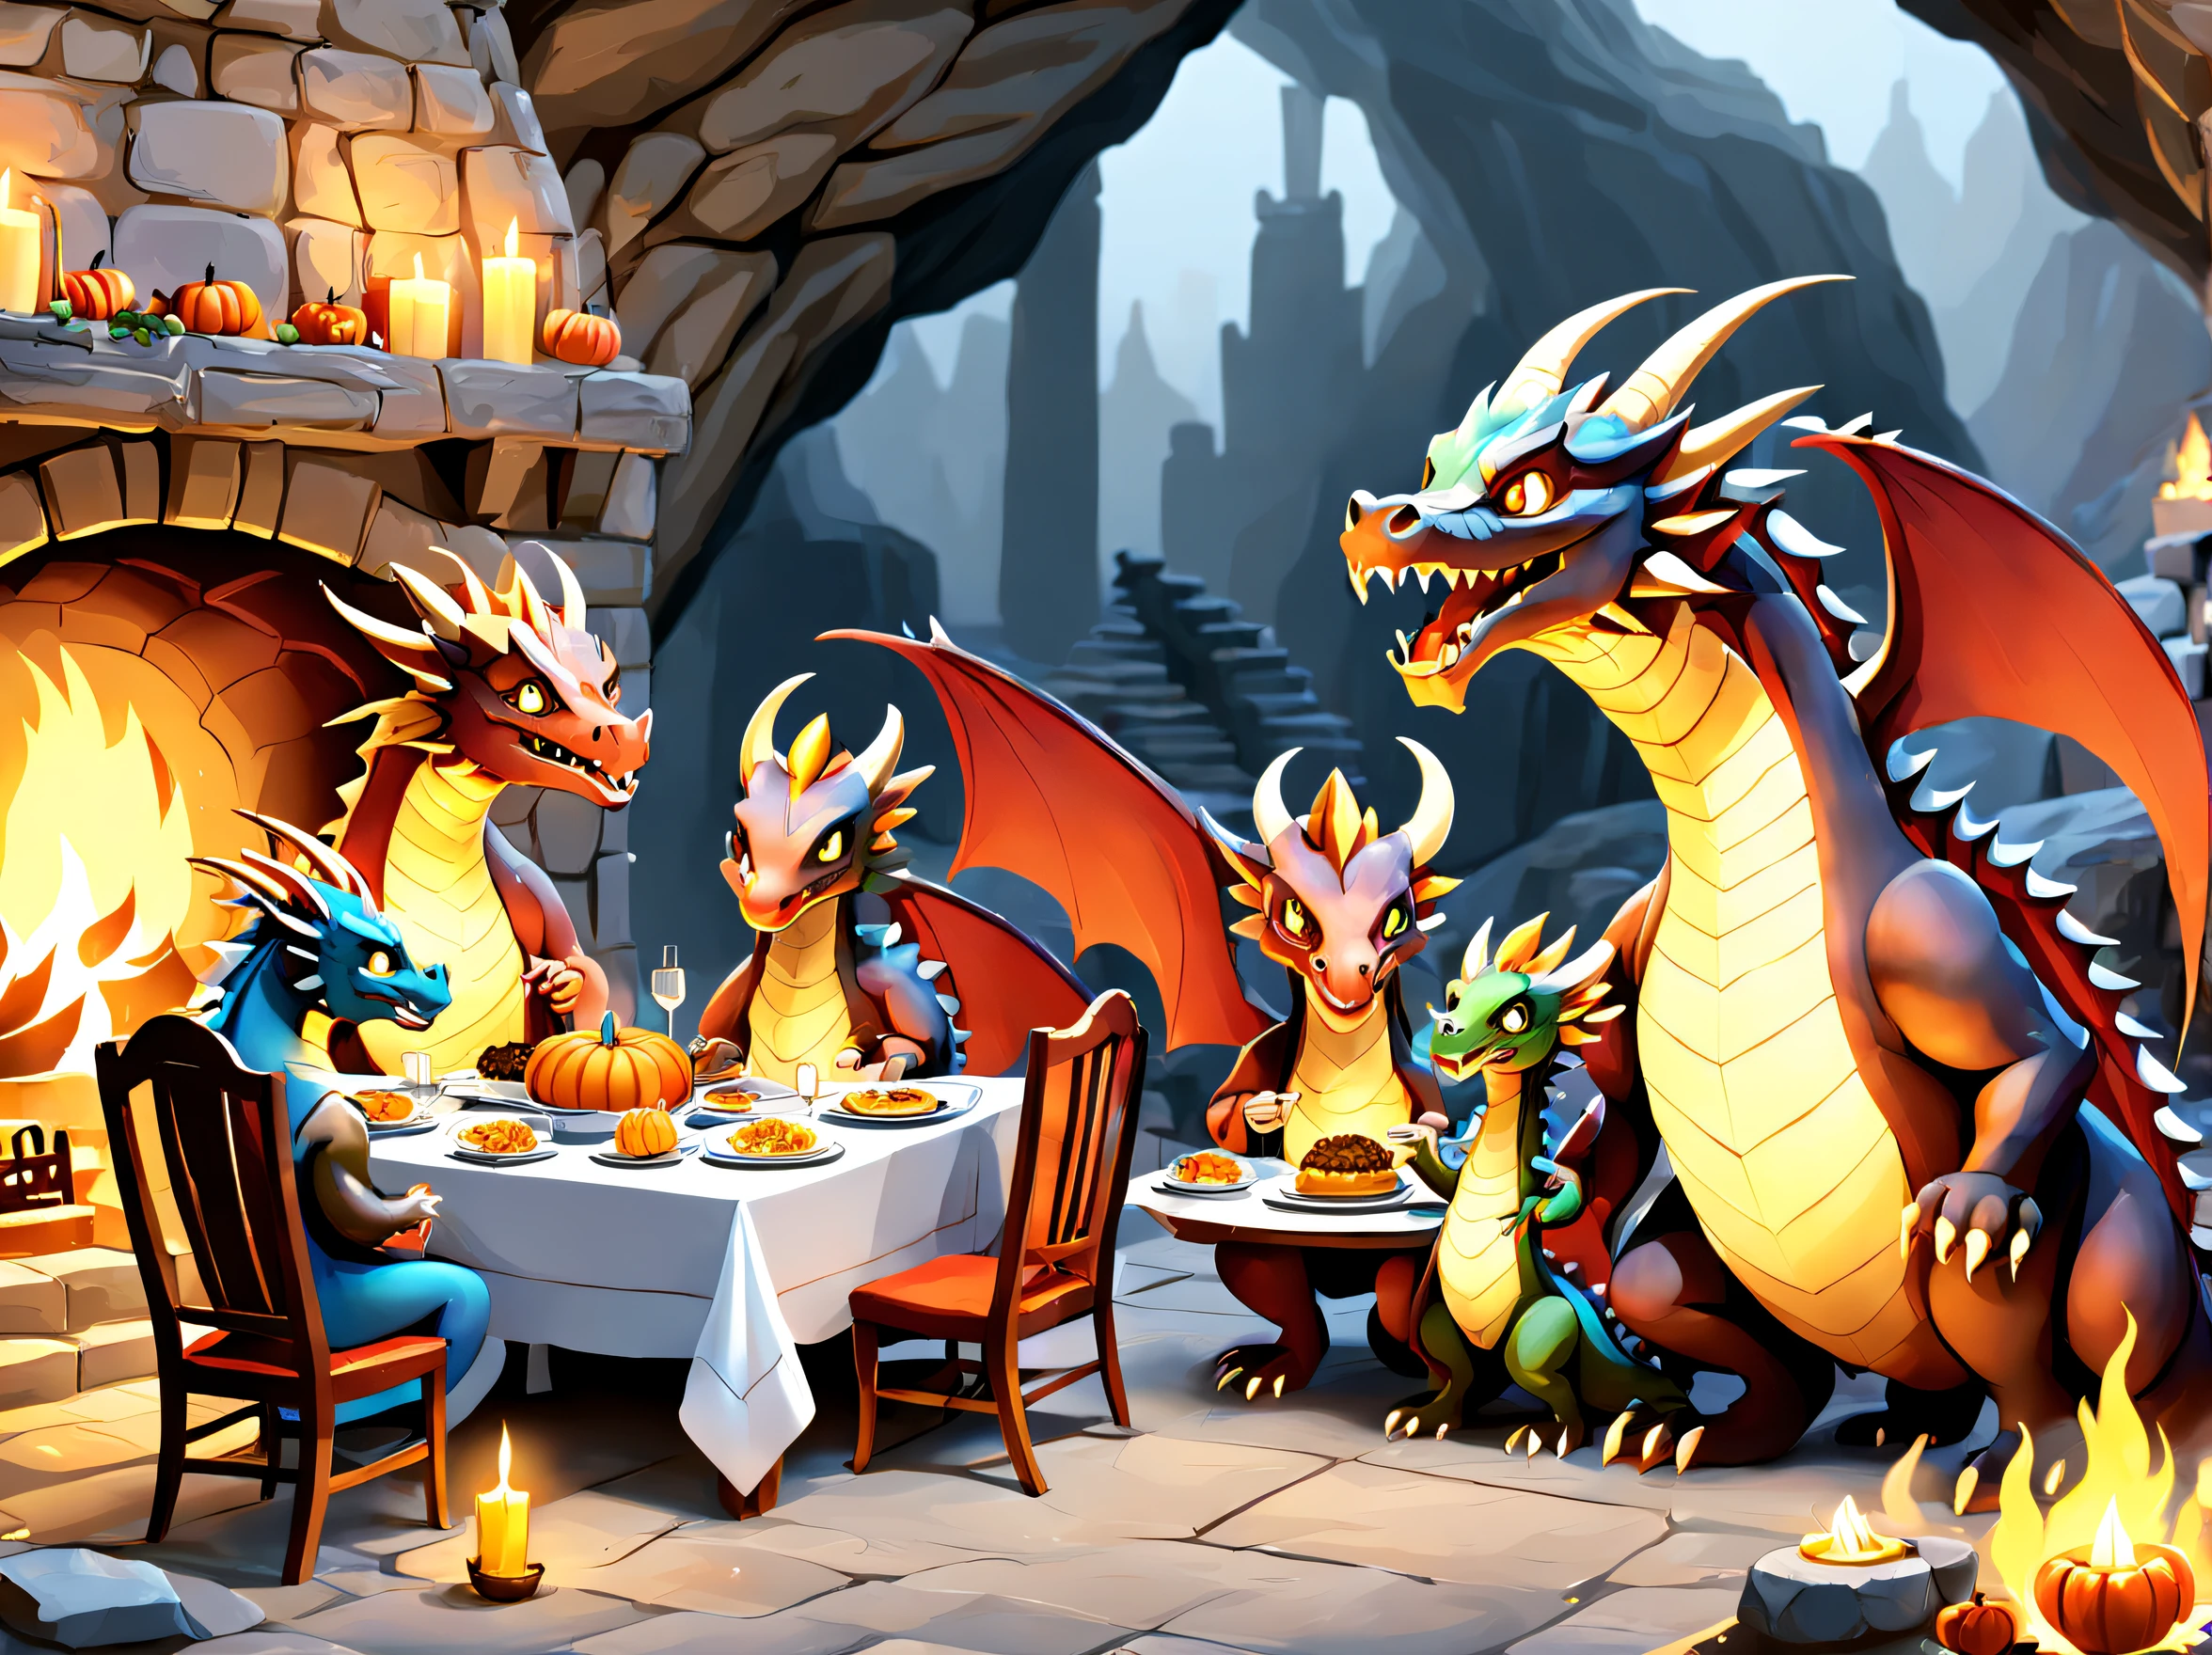 Семья антропоморфных драконов обедает в честь Дня благодарения перед большим камином в пещере..